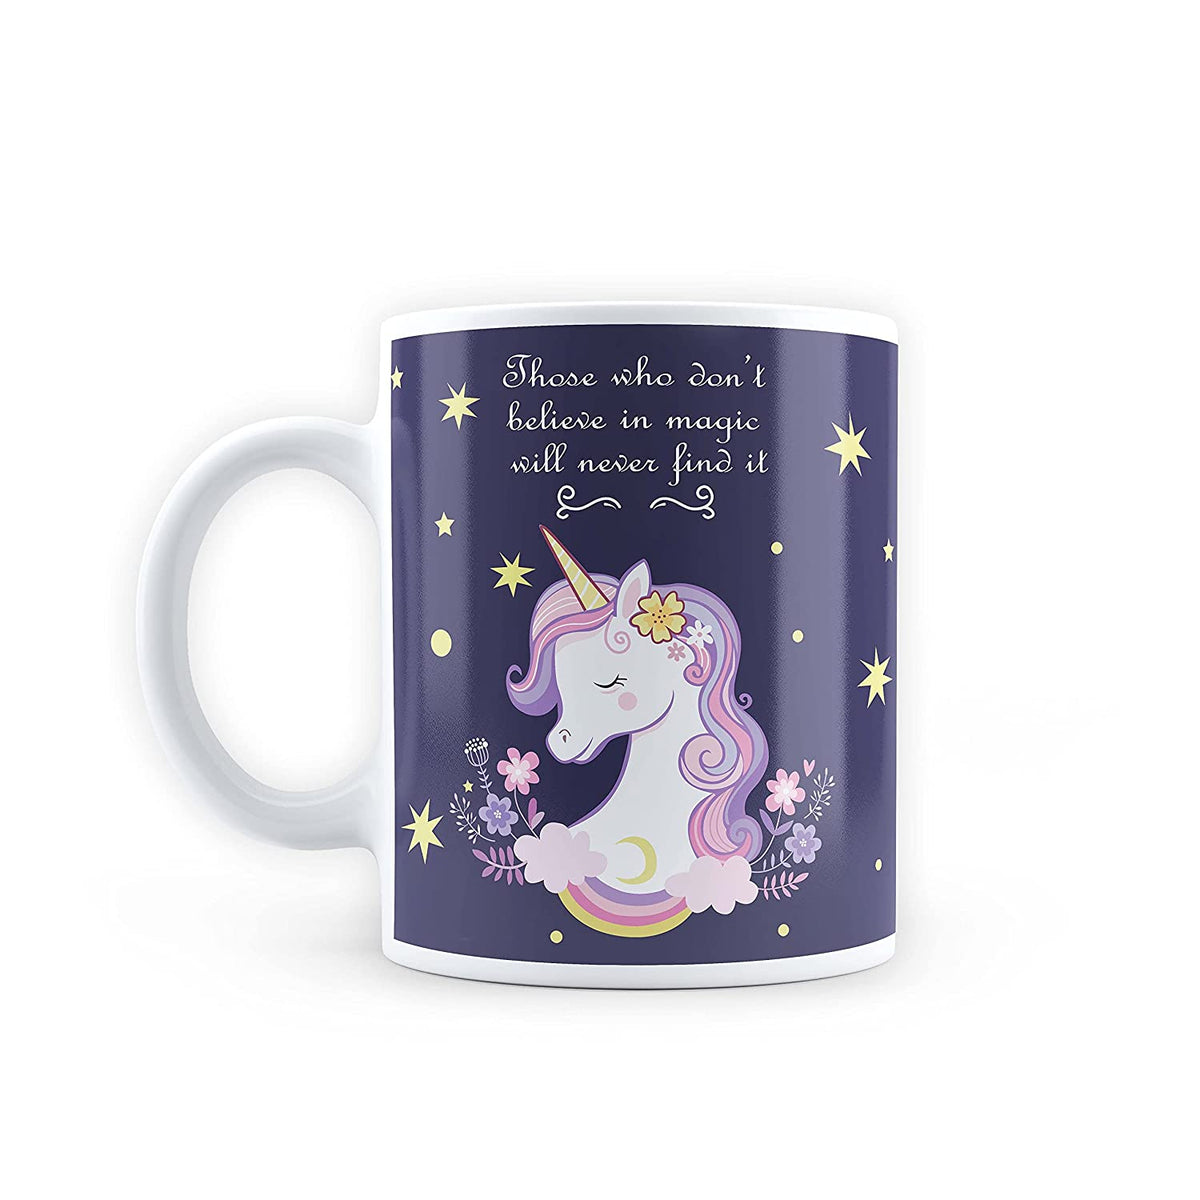 Finally found my unicorn travel mug! : r/BuyItForLife